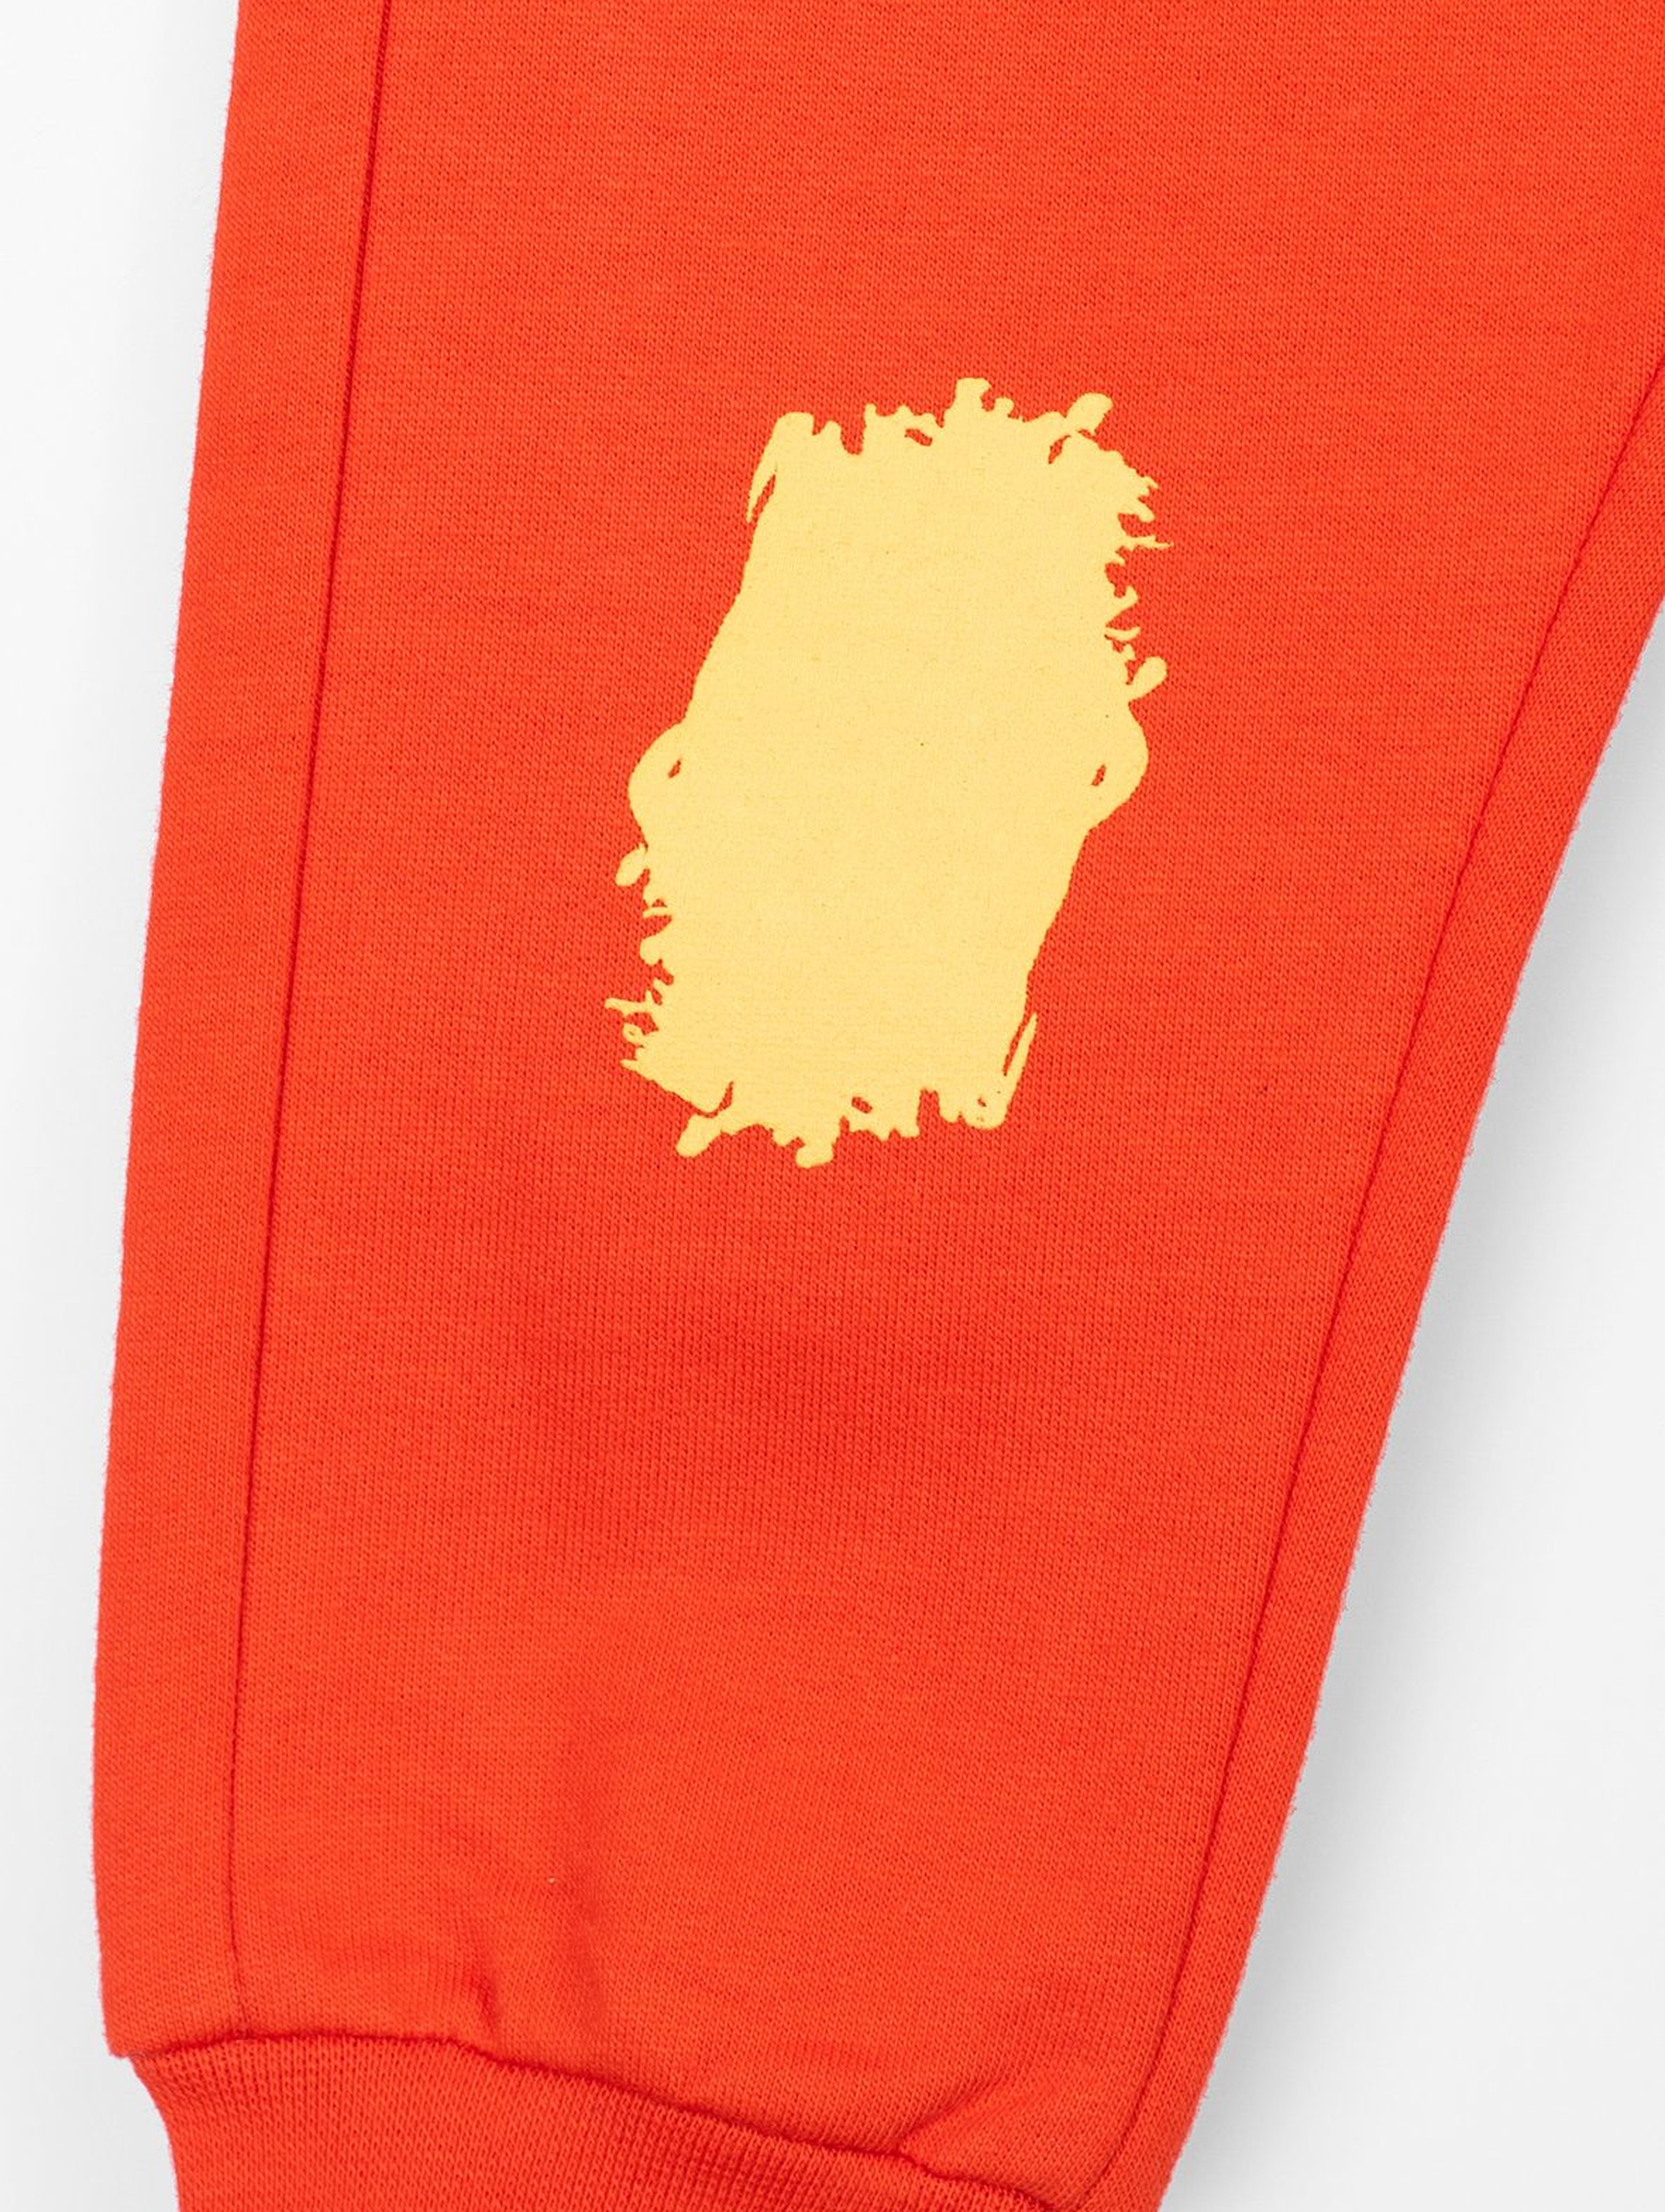 Spodnie dresowe dla niemowlaka- pomarańczowe